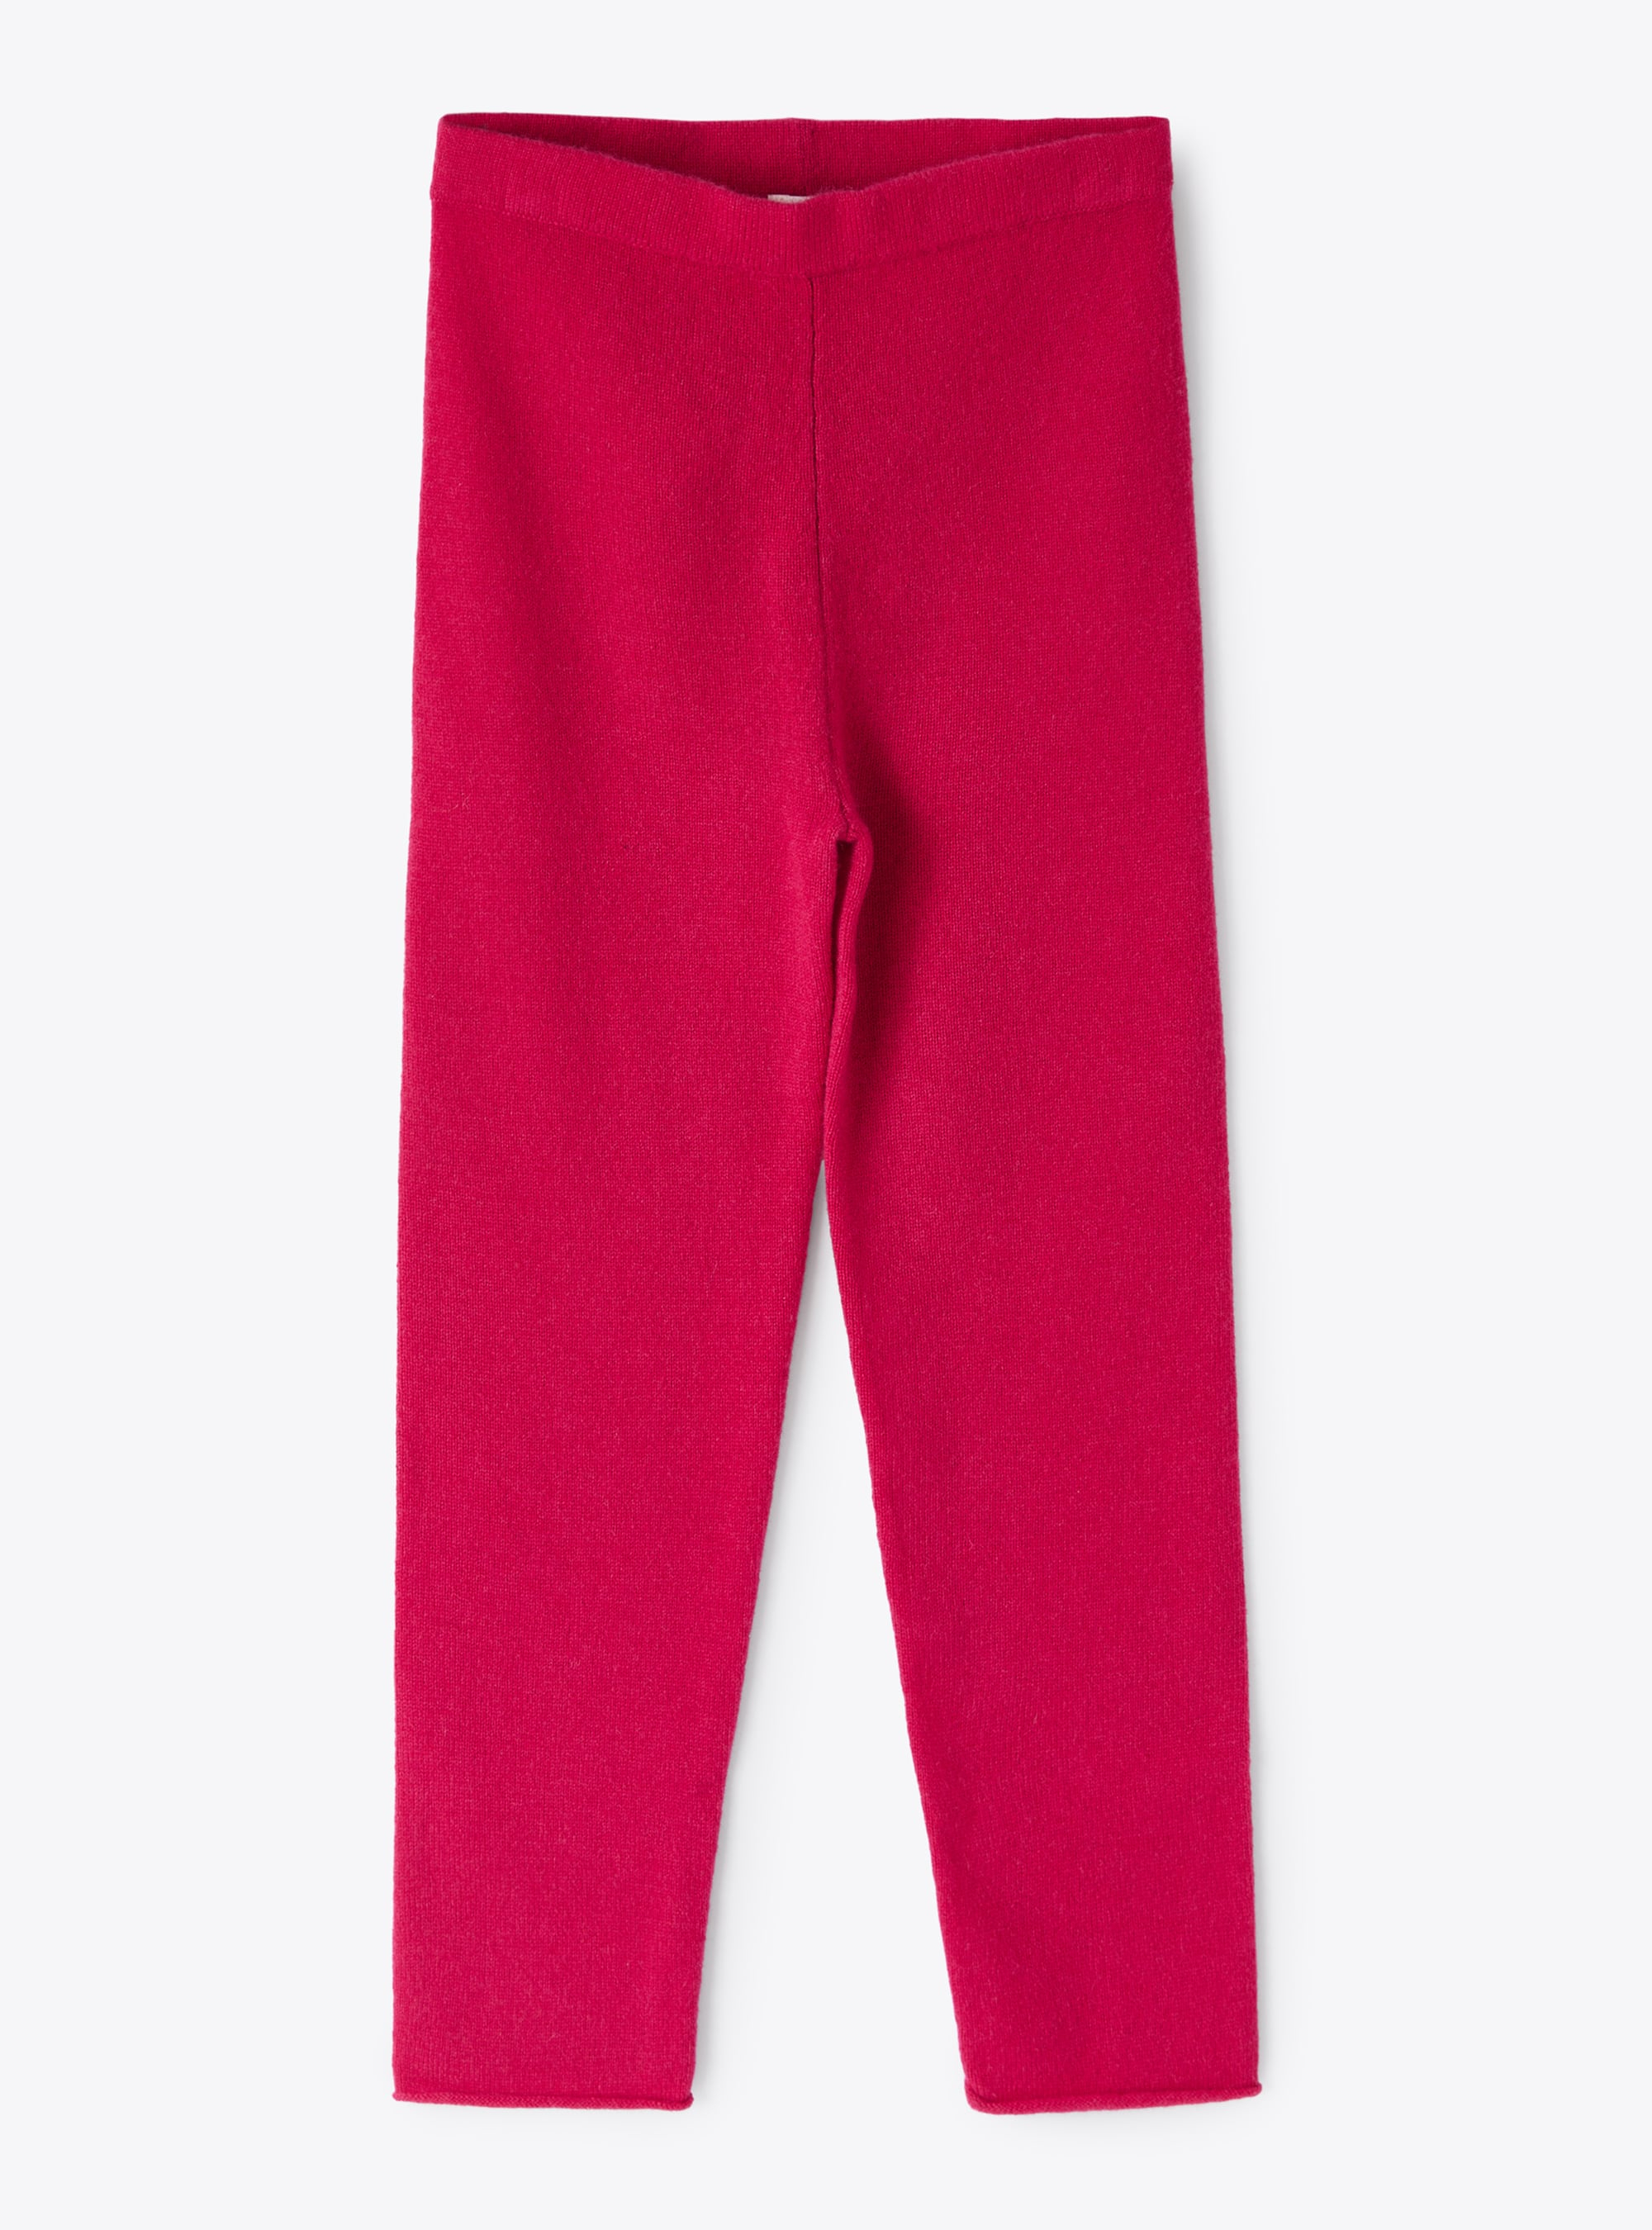 Fuchsia cashmere leggings - Trousers - Il Gufo